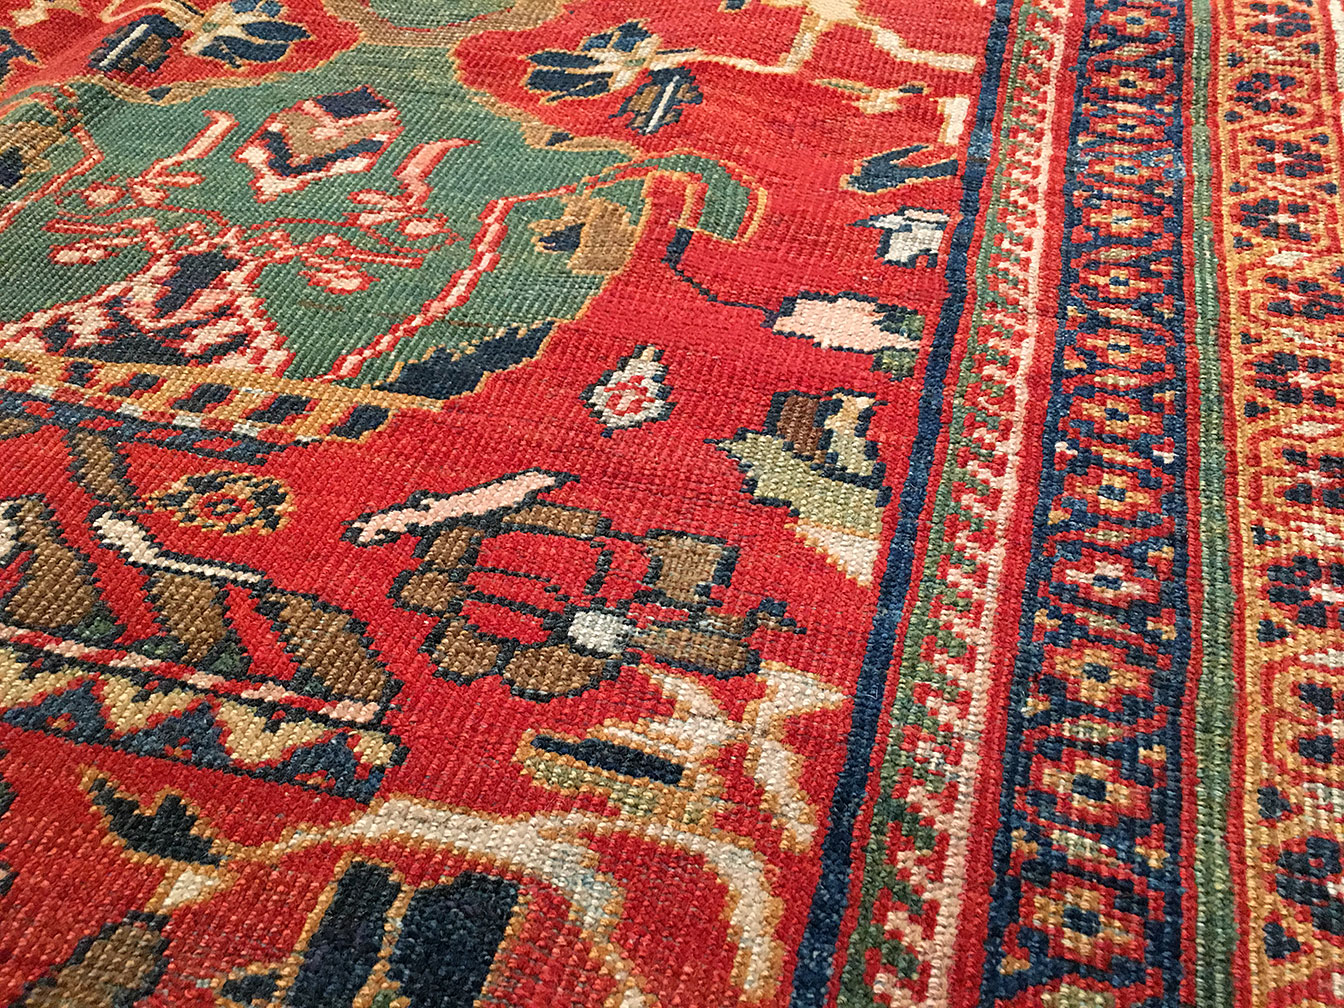 Antique sultan abad Carpet - # 51385